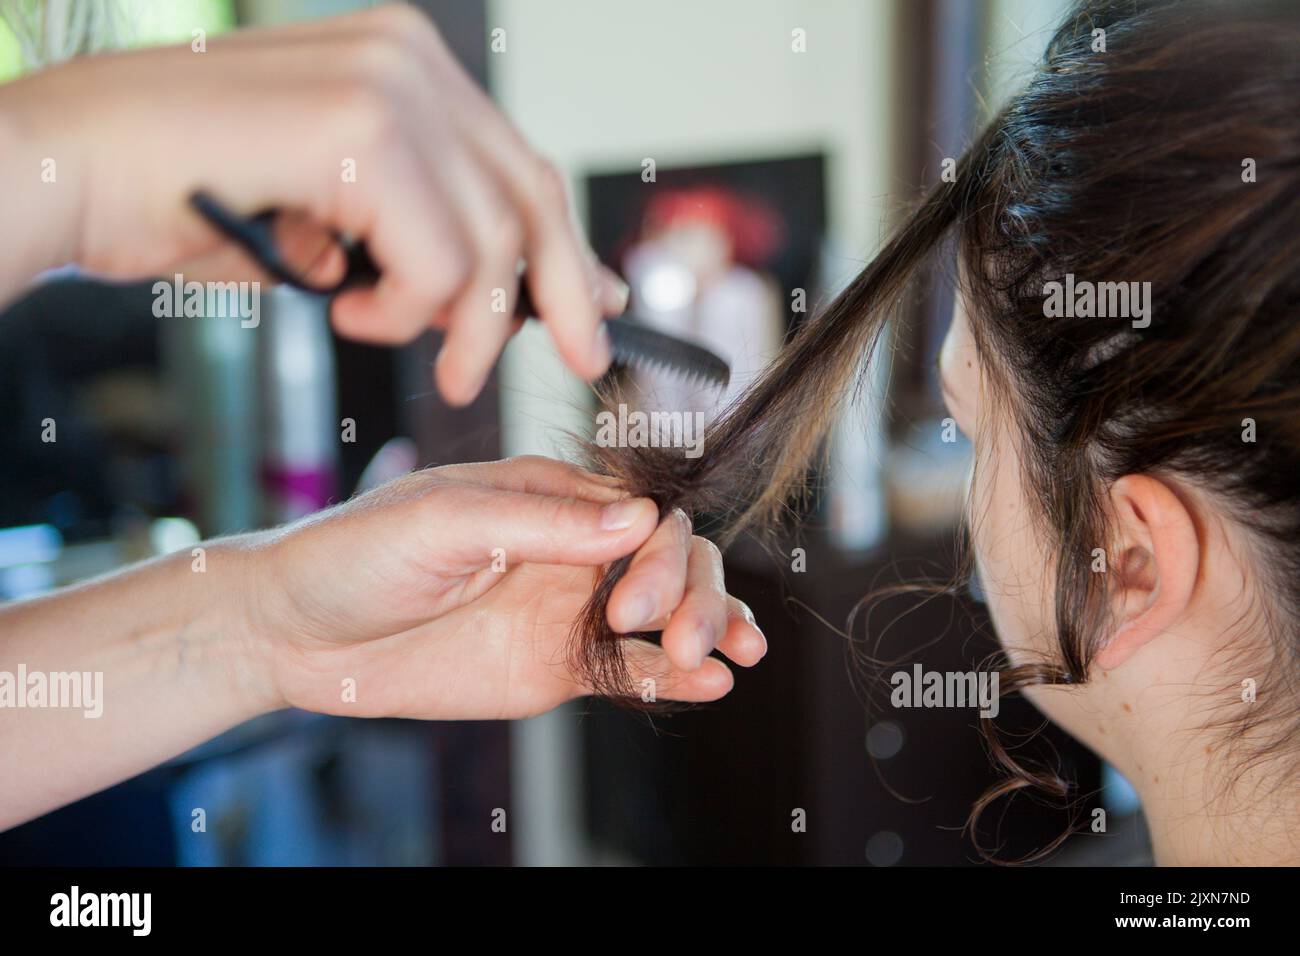 In einem Friseur, Salon, Details von Händen, die einen Kamm halten und die Frisur einer Frau vervollständigen. Keine Teilfläche sichtbar. Foto eines Berufstätigen bei der Arbeit. Stockfoto